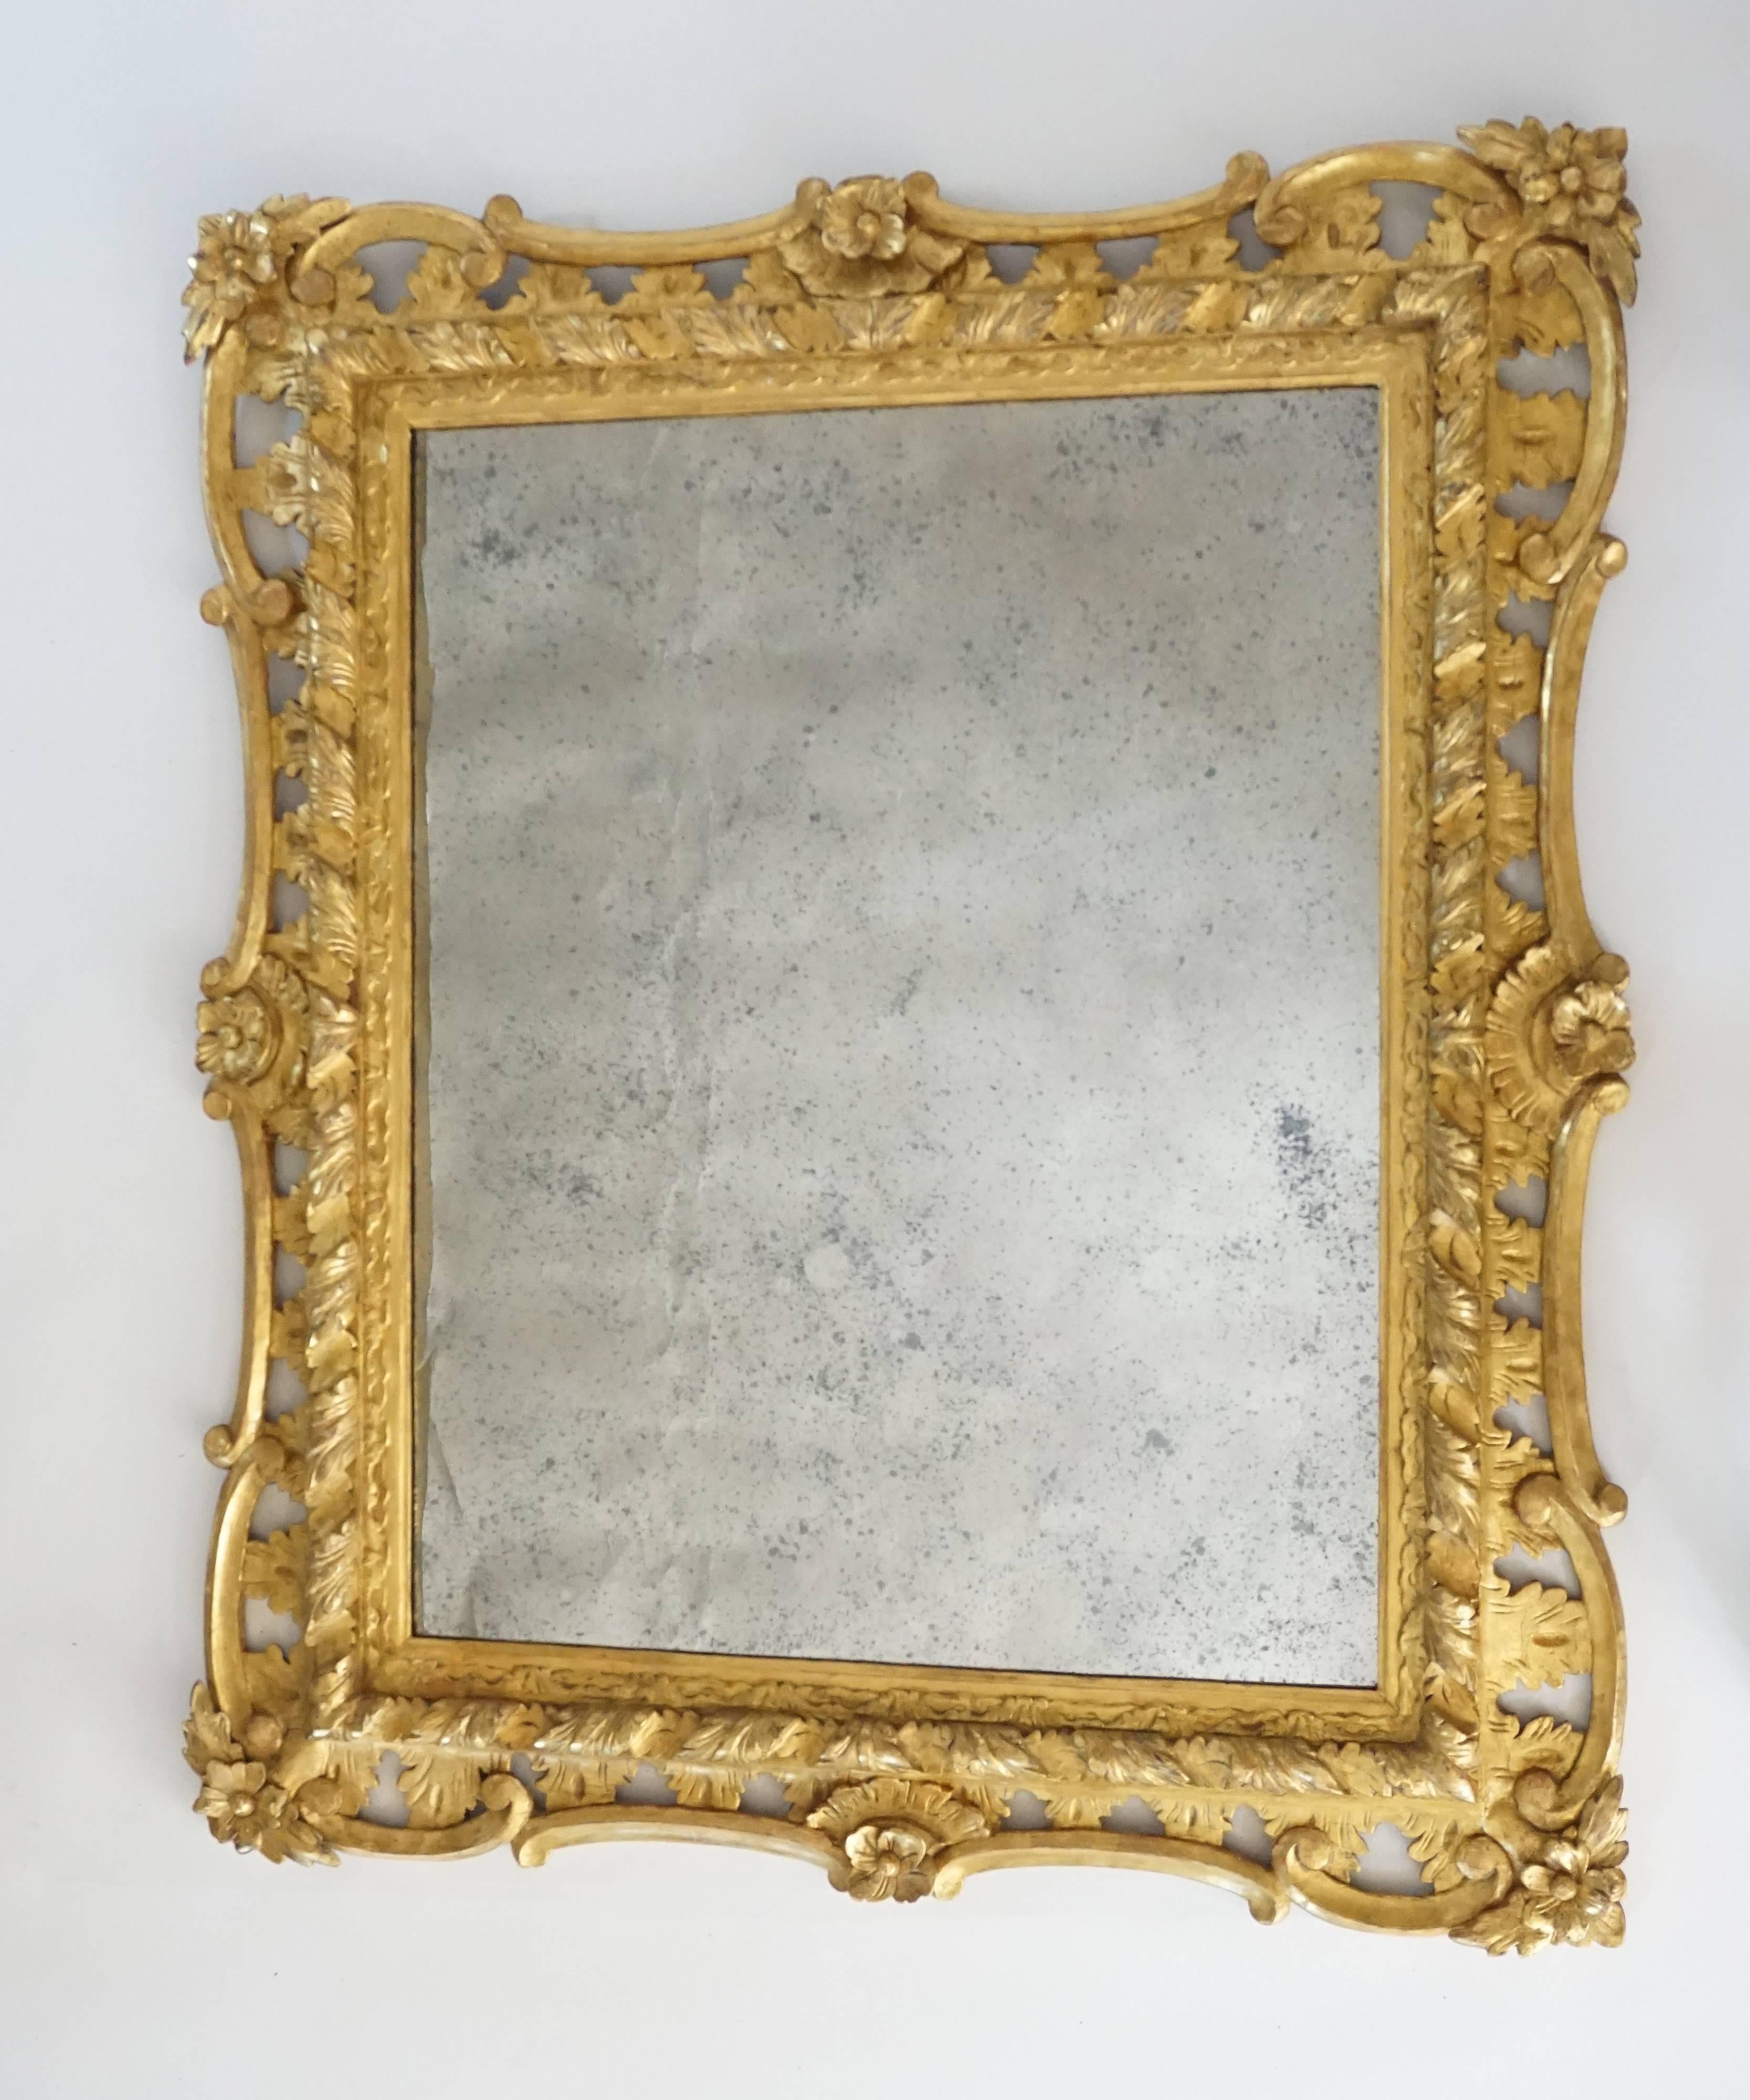 Rococo Revival George II Rococo Style Mirror, England, circa 1830